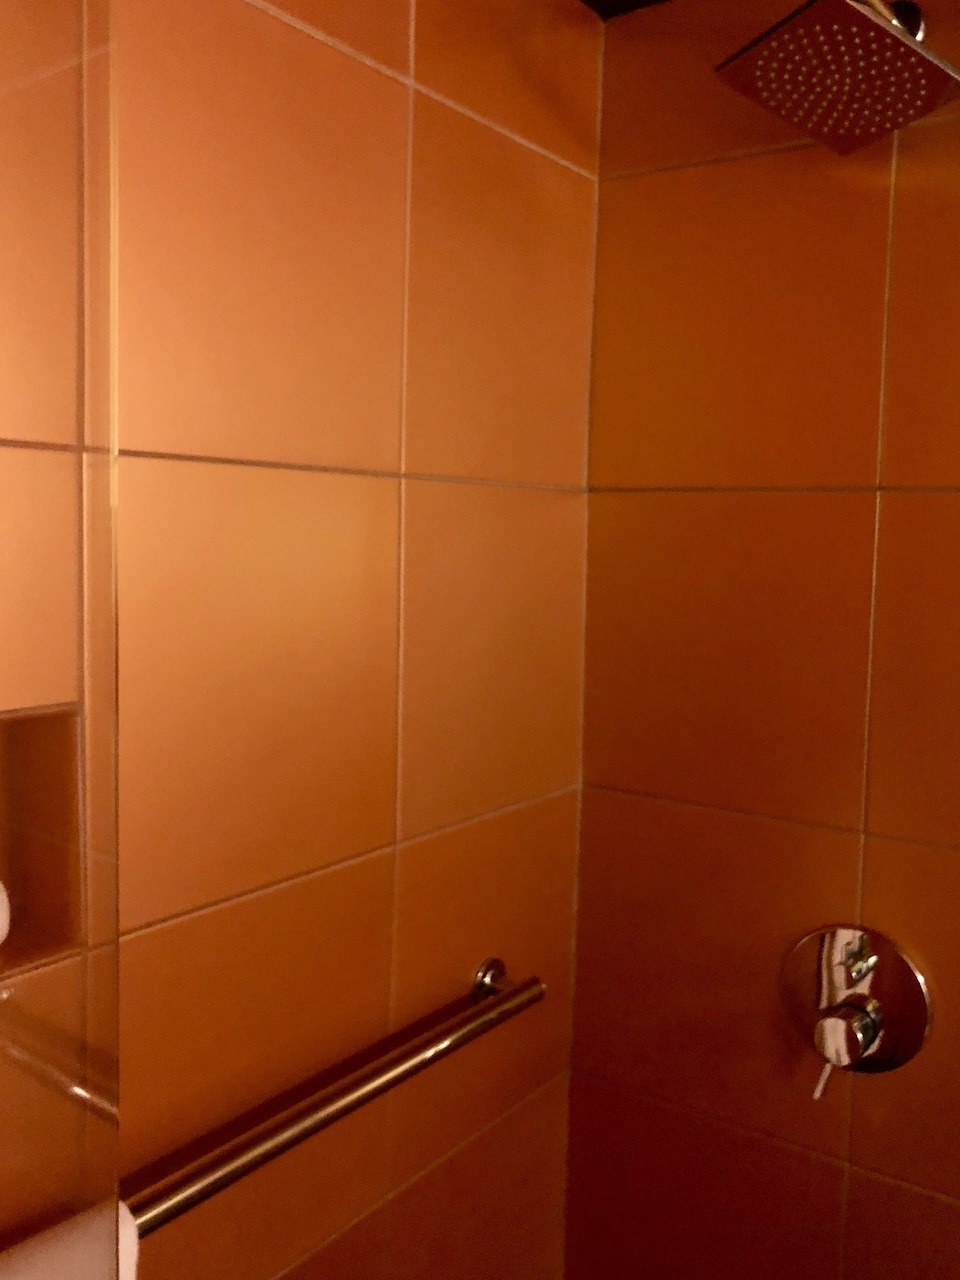 Very orange shower